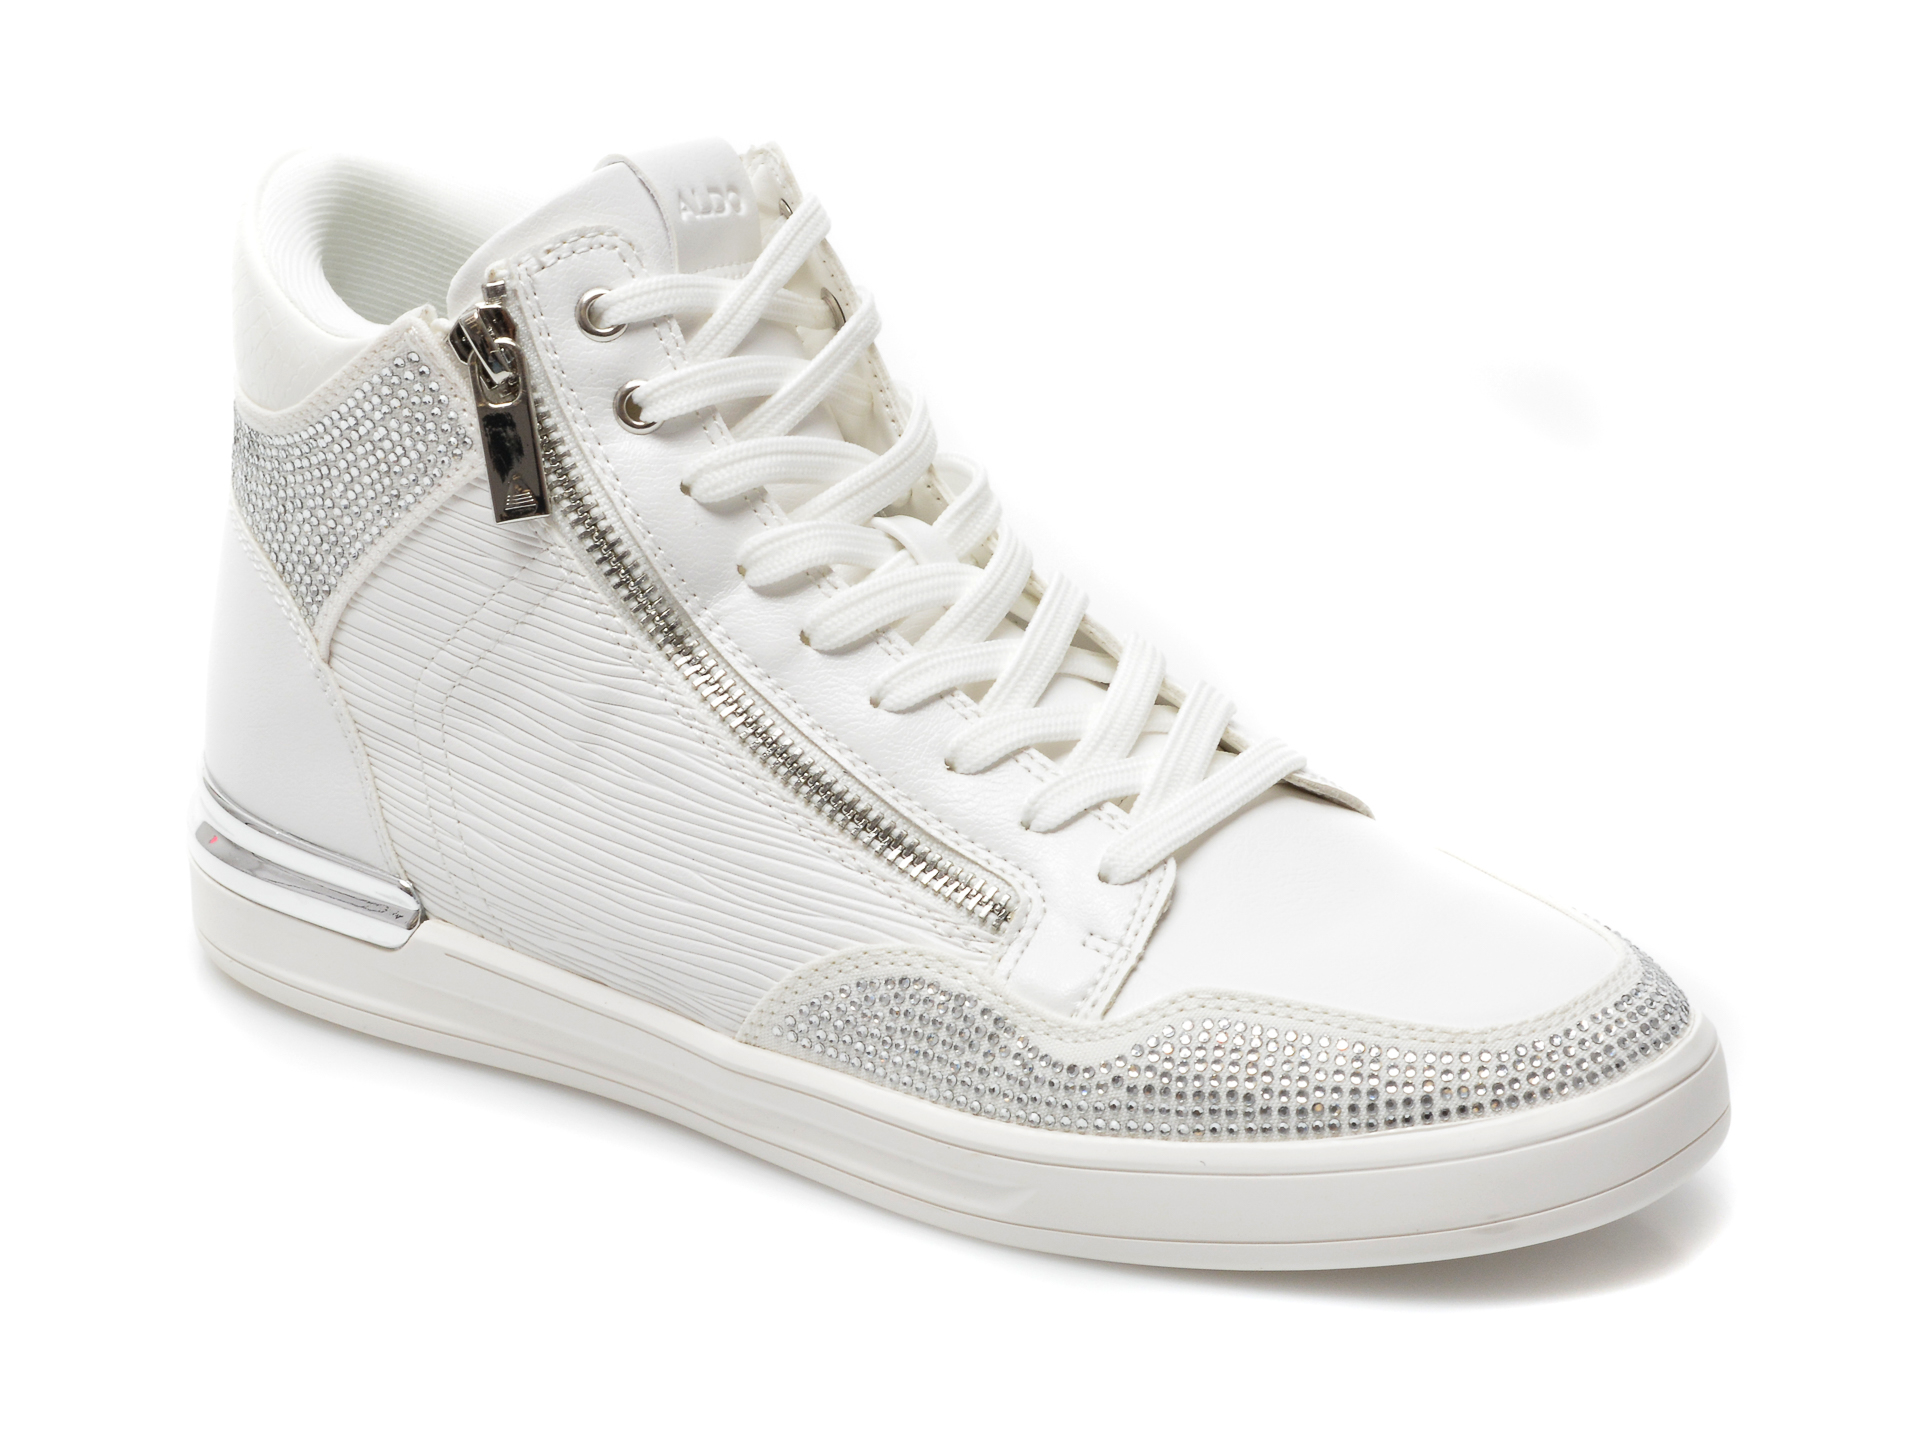 Pantofi ALDO albi, Sauerberg110, din piele ecologica ALDO imagine 2022